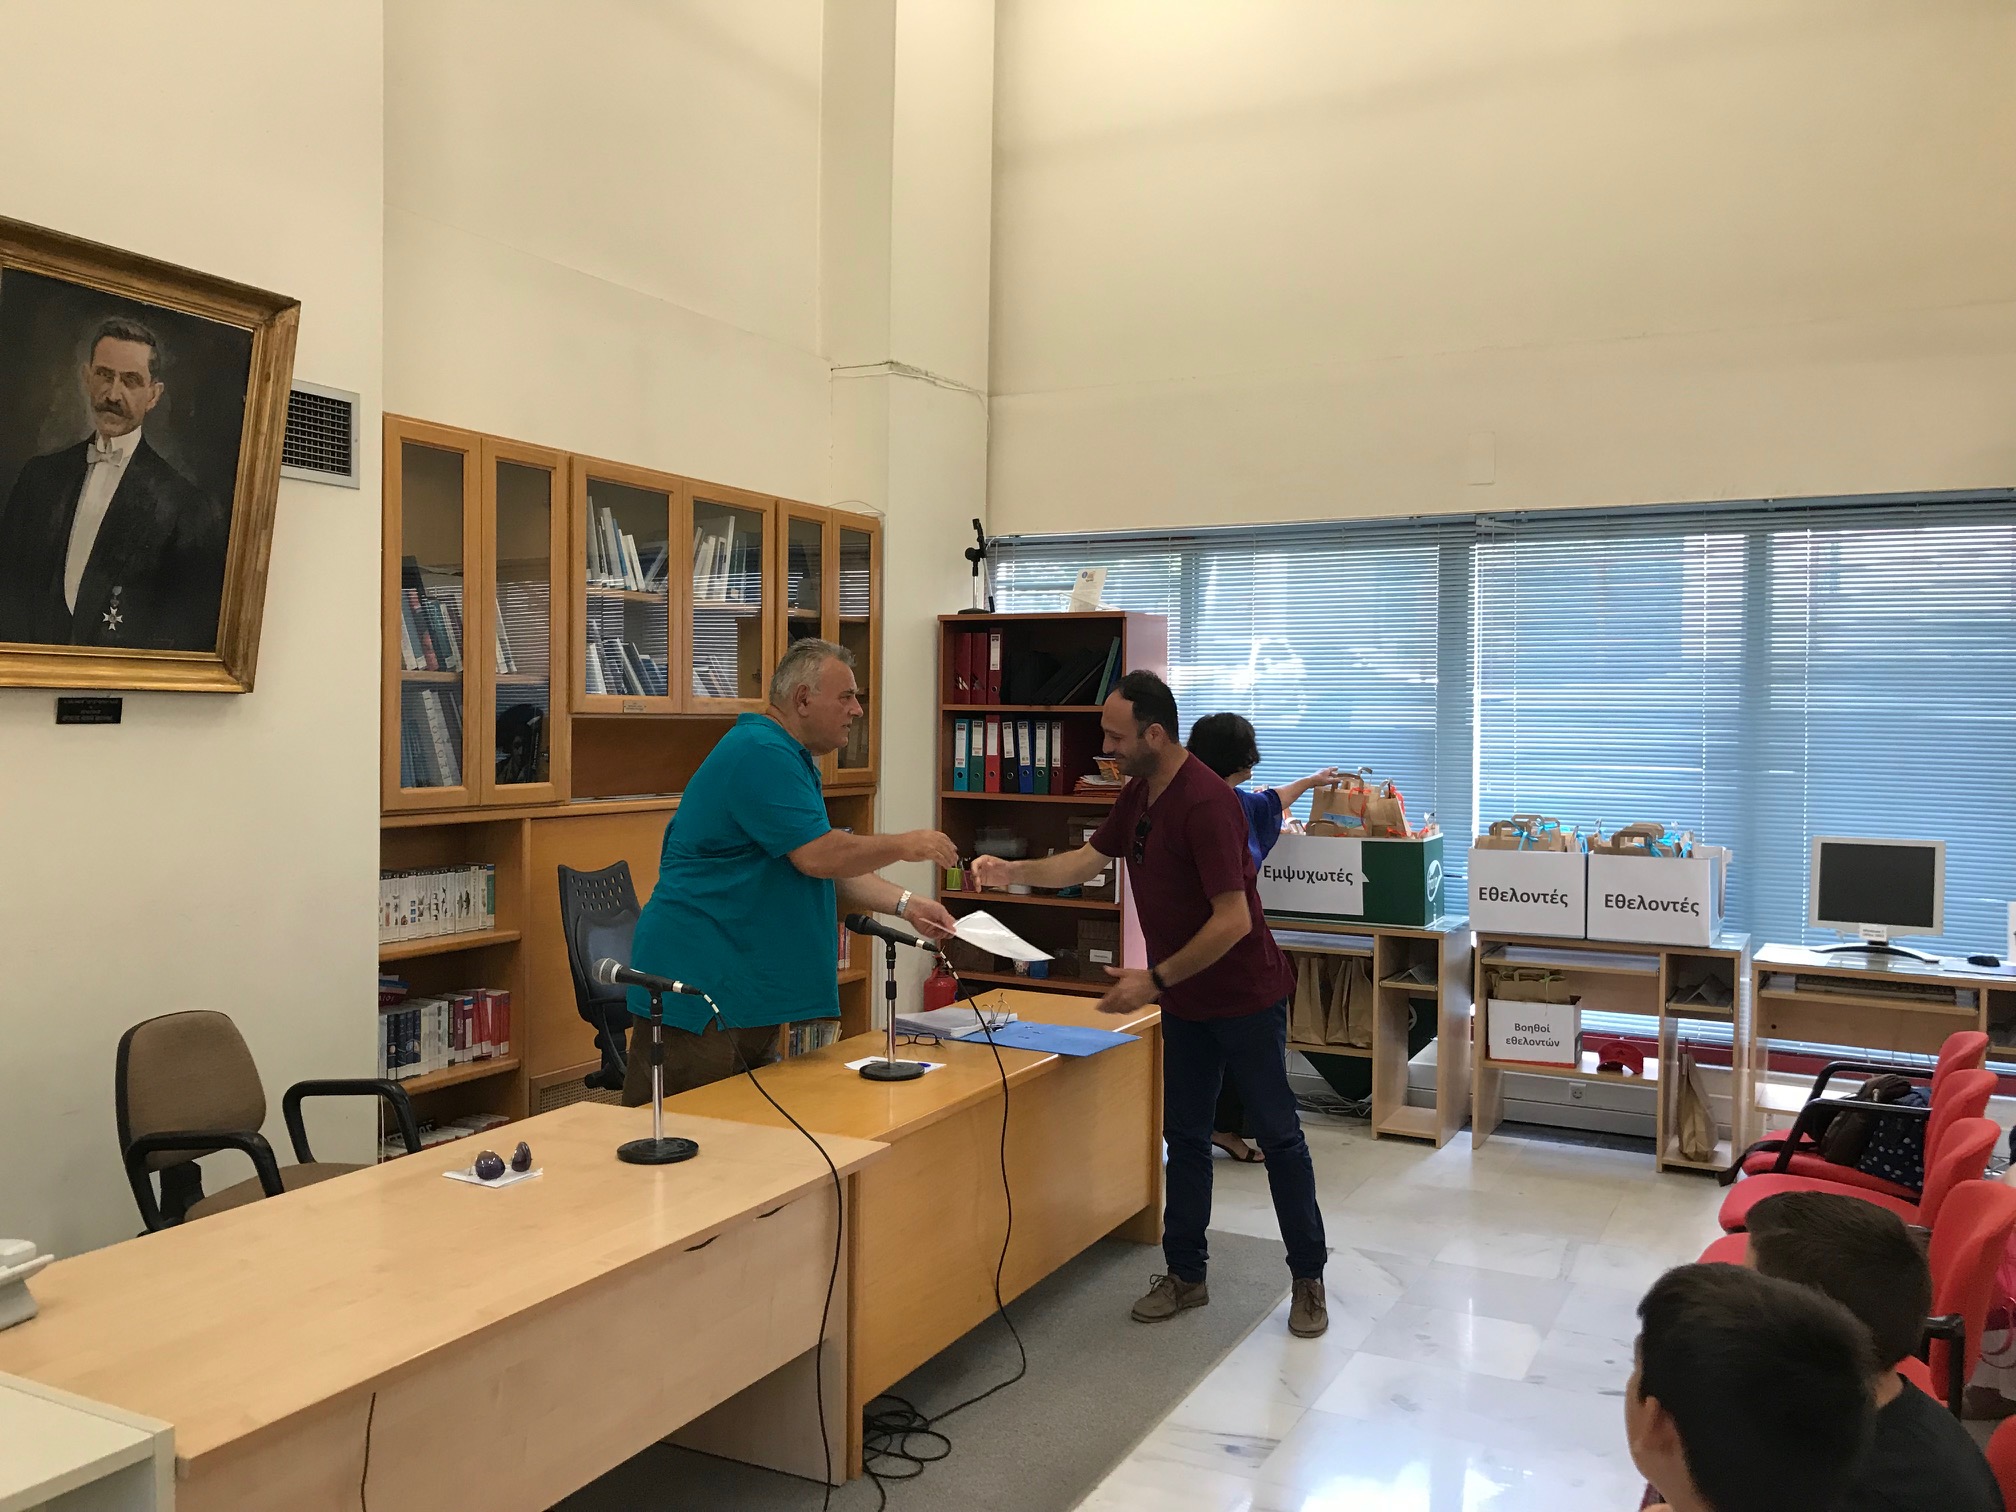 Γιορτή λήξης των εκπαιδευτικών προγραμμάτων "Καλοκαίρι 2019 στη Βιβλιοθήκη"